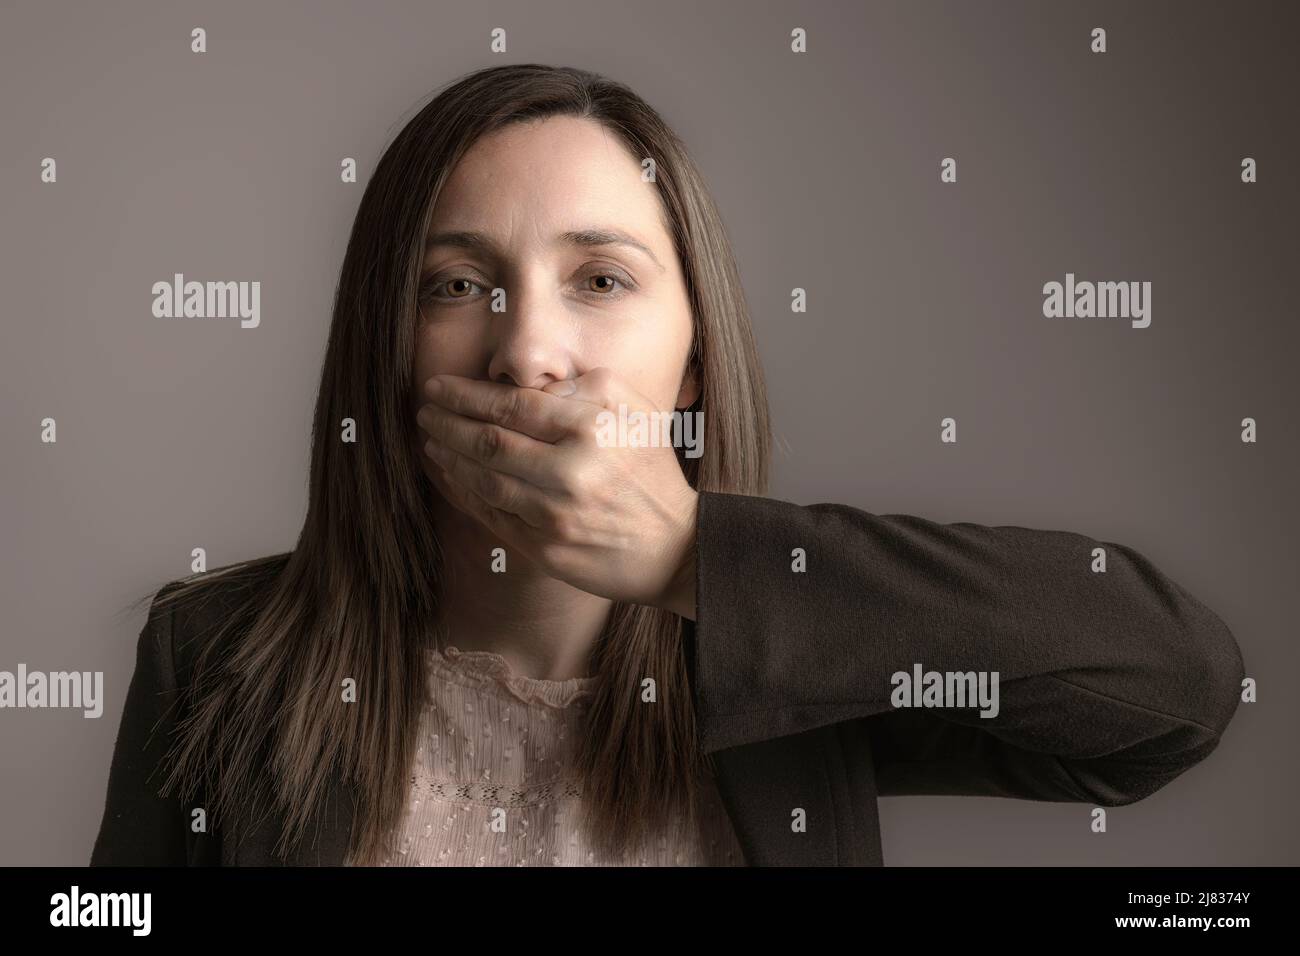 ritratto di una donna che ricopre la bocca con una mano. Foto Stock